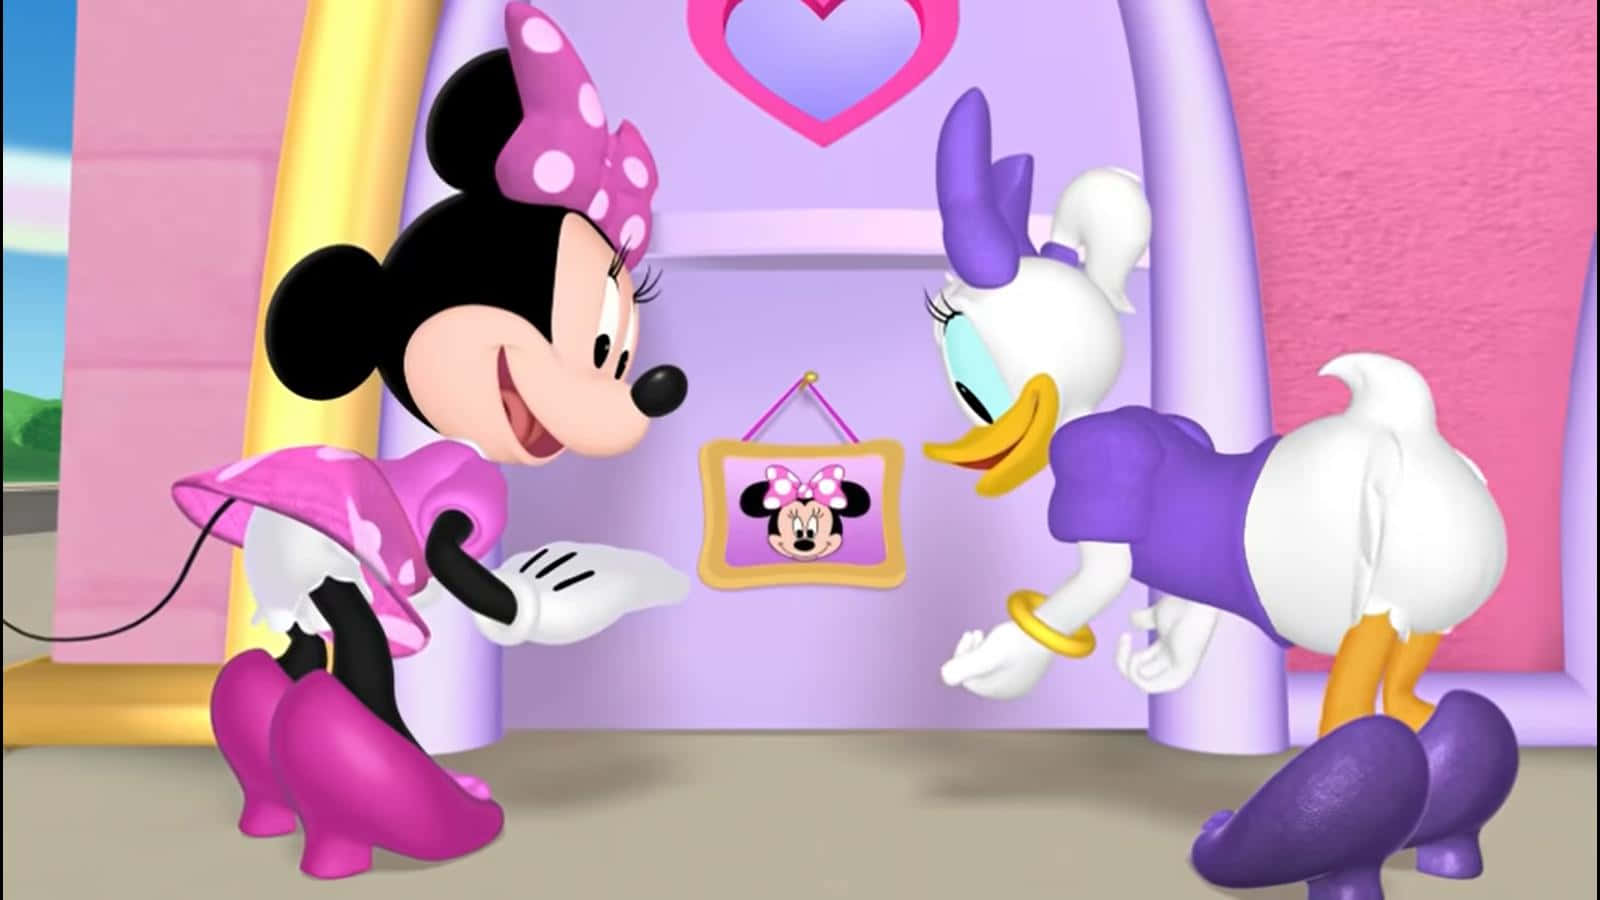 Minniemouse Y Donald Duck En Una Casa Rosa Y Morada. Fondo de pantalla